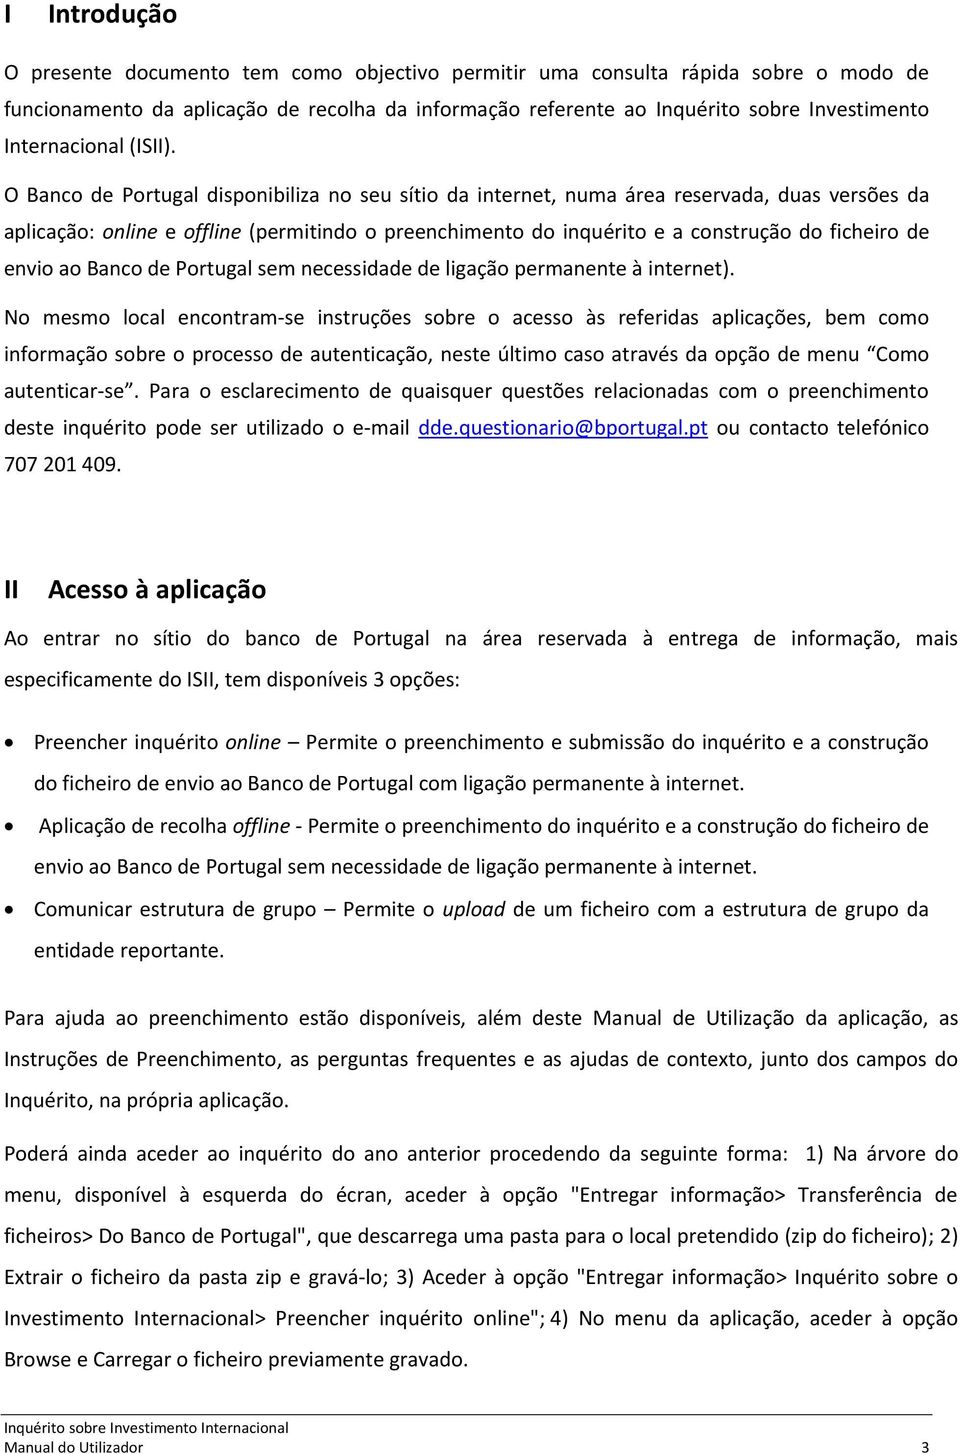 O Banco de Portugal disponibiliza no seu sítio da internet, numa área reservada, duas versões da aplicação: online e offline (permitindo o preenchimento do inquérito e a construção do ficheiro de